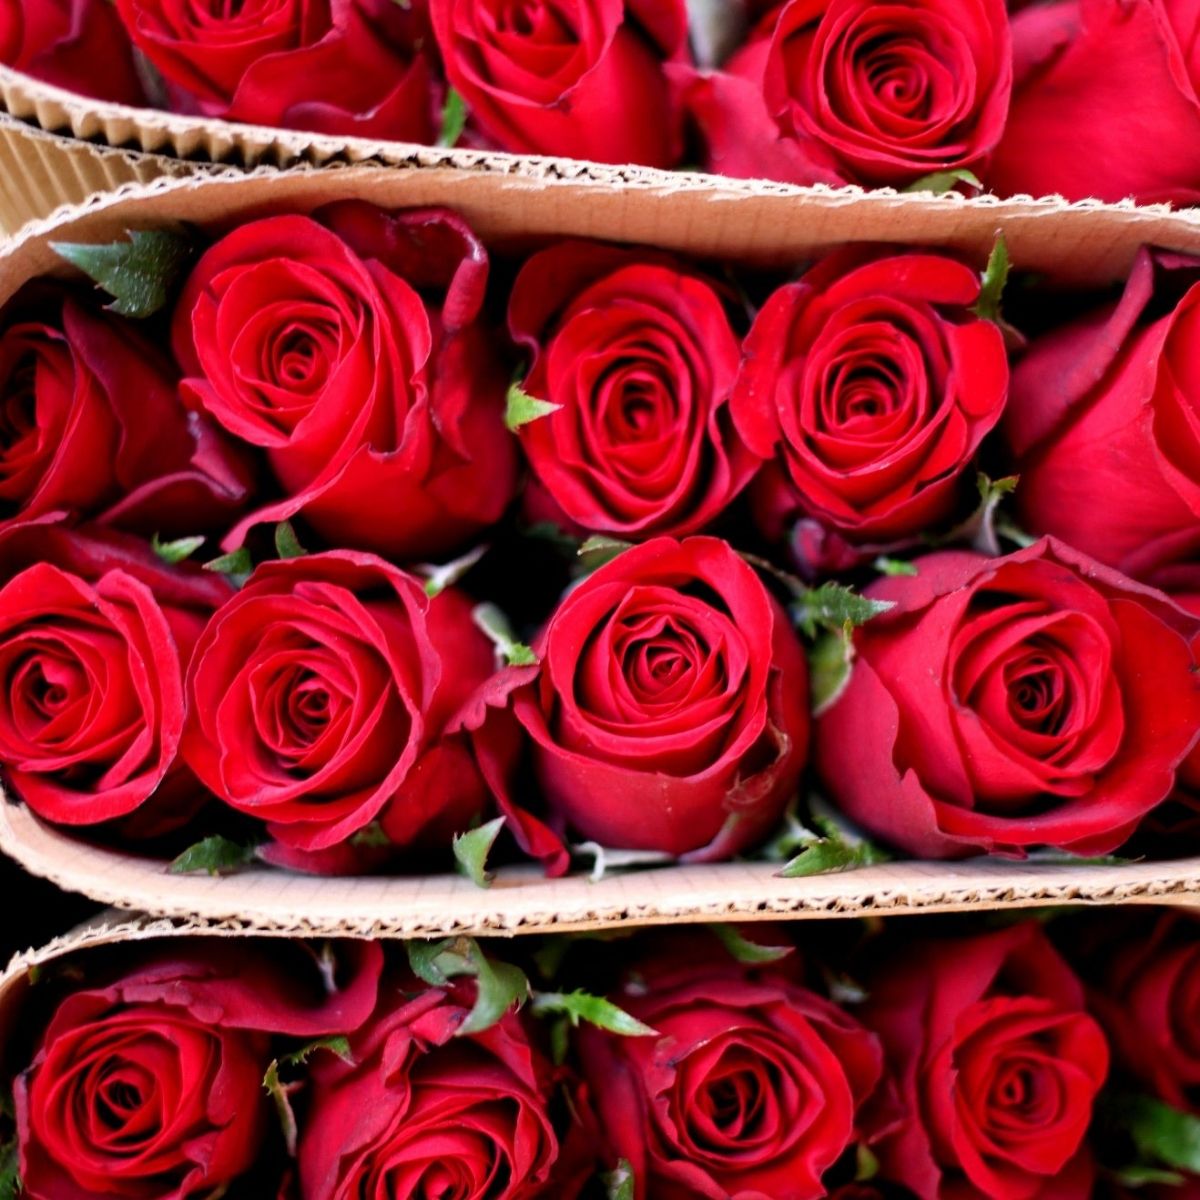 karen-roses-grower-on-thursd-featured-photo